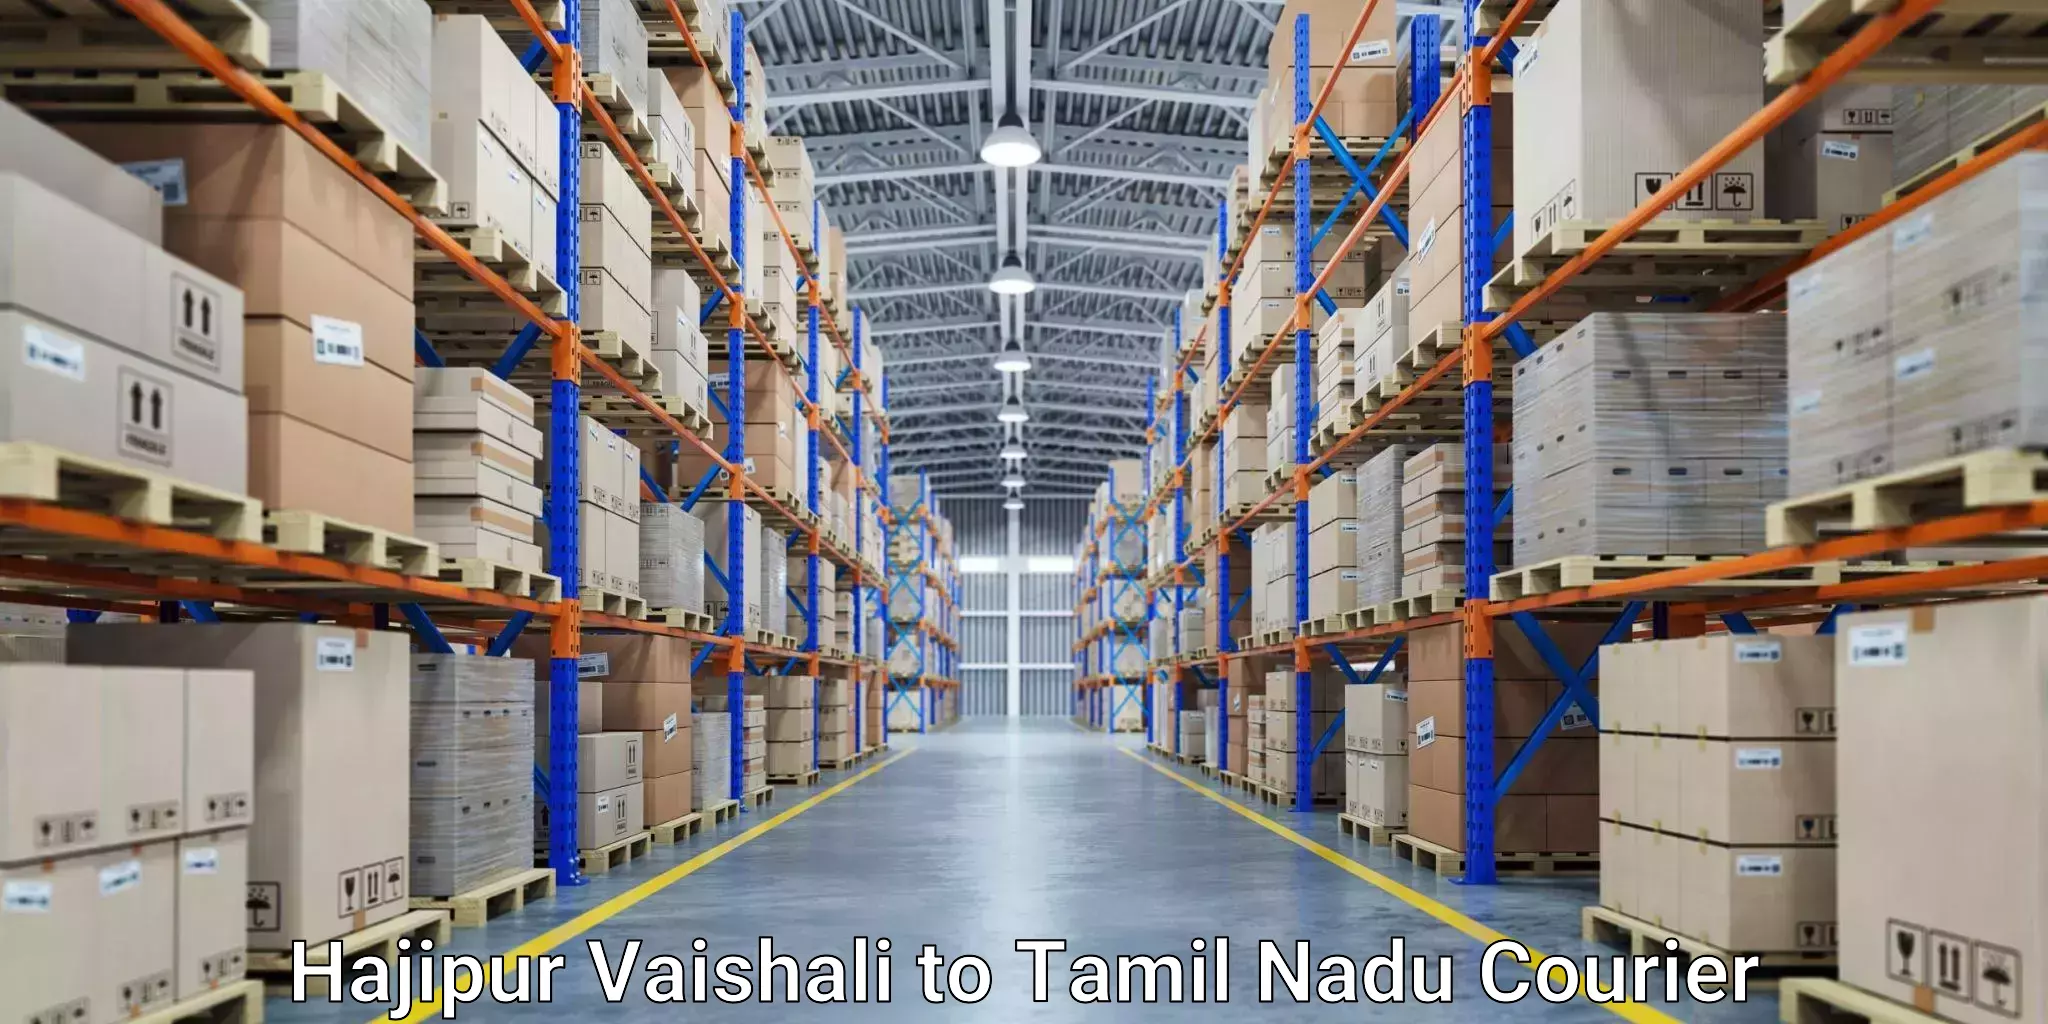 International parcel service Hajipur Vaishali to Hosur